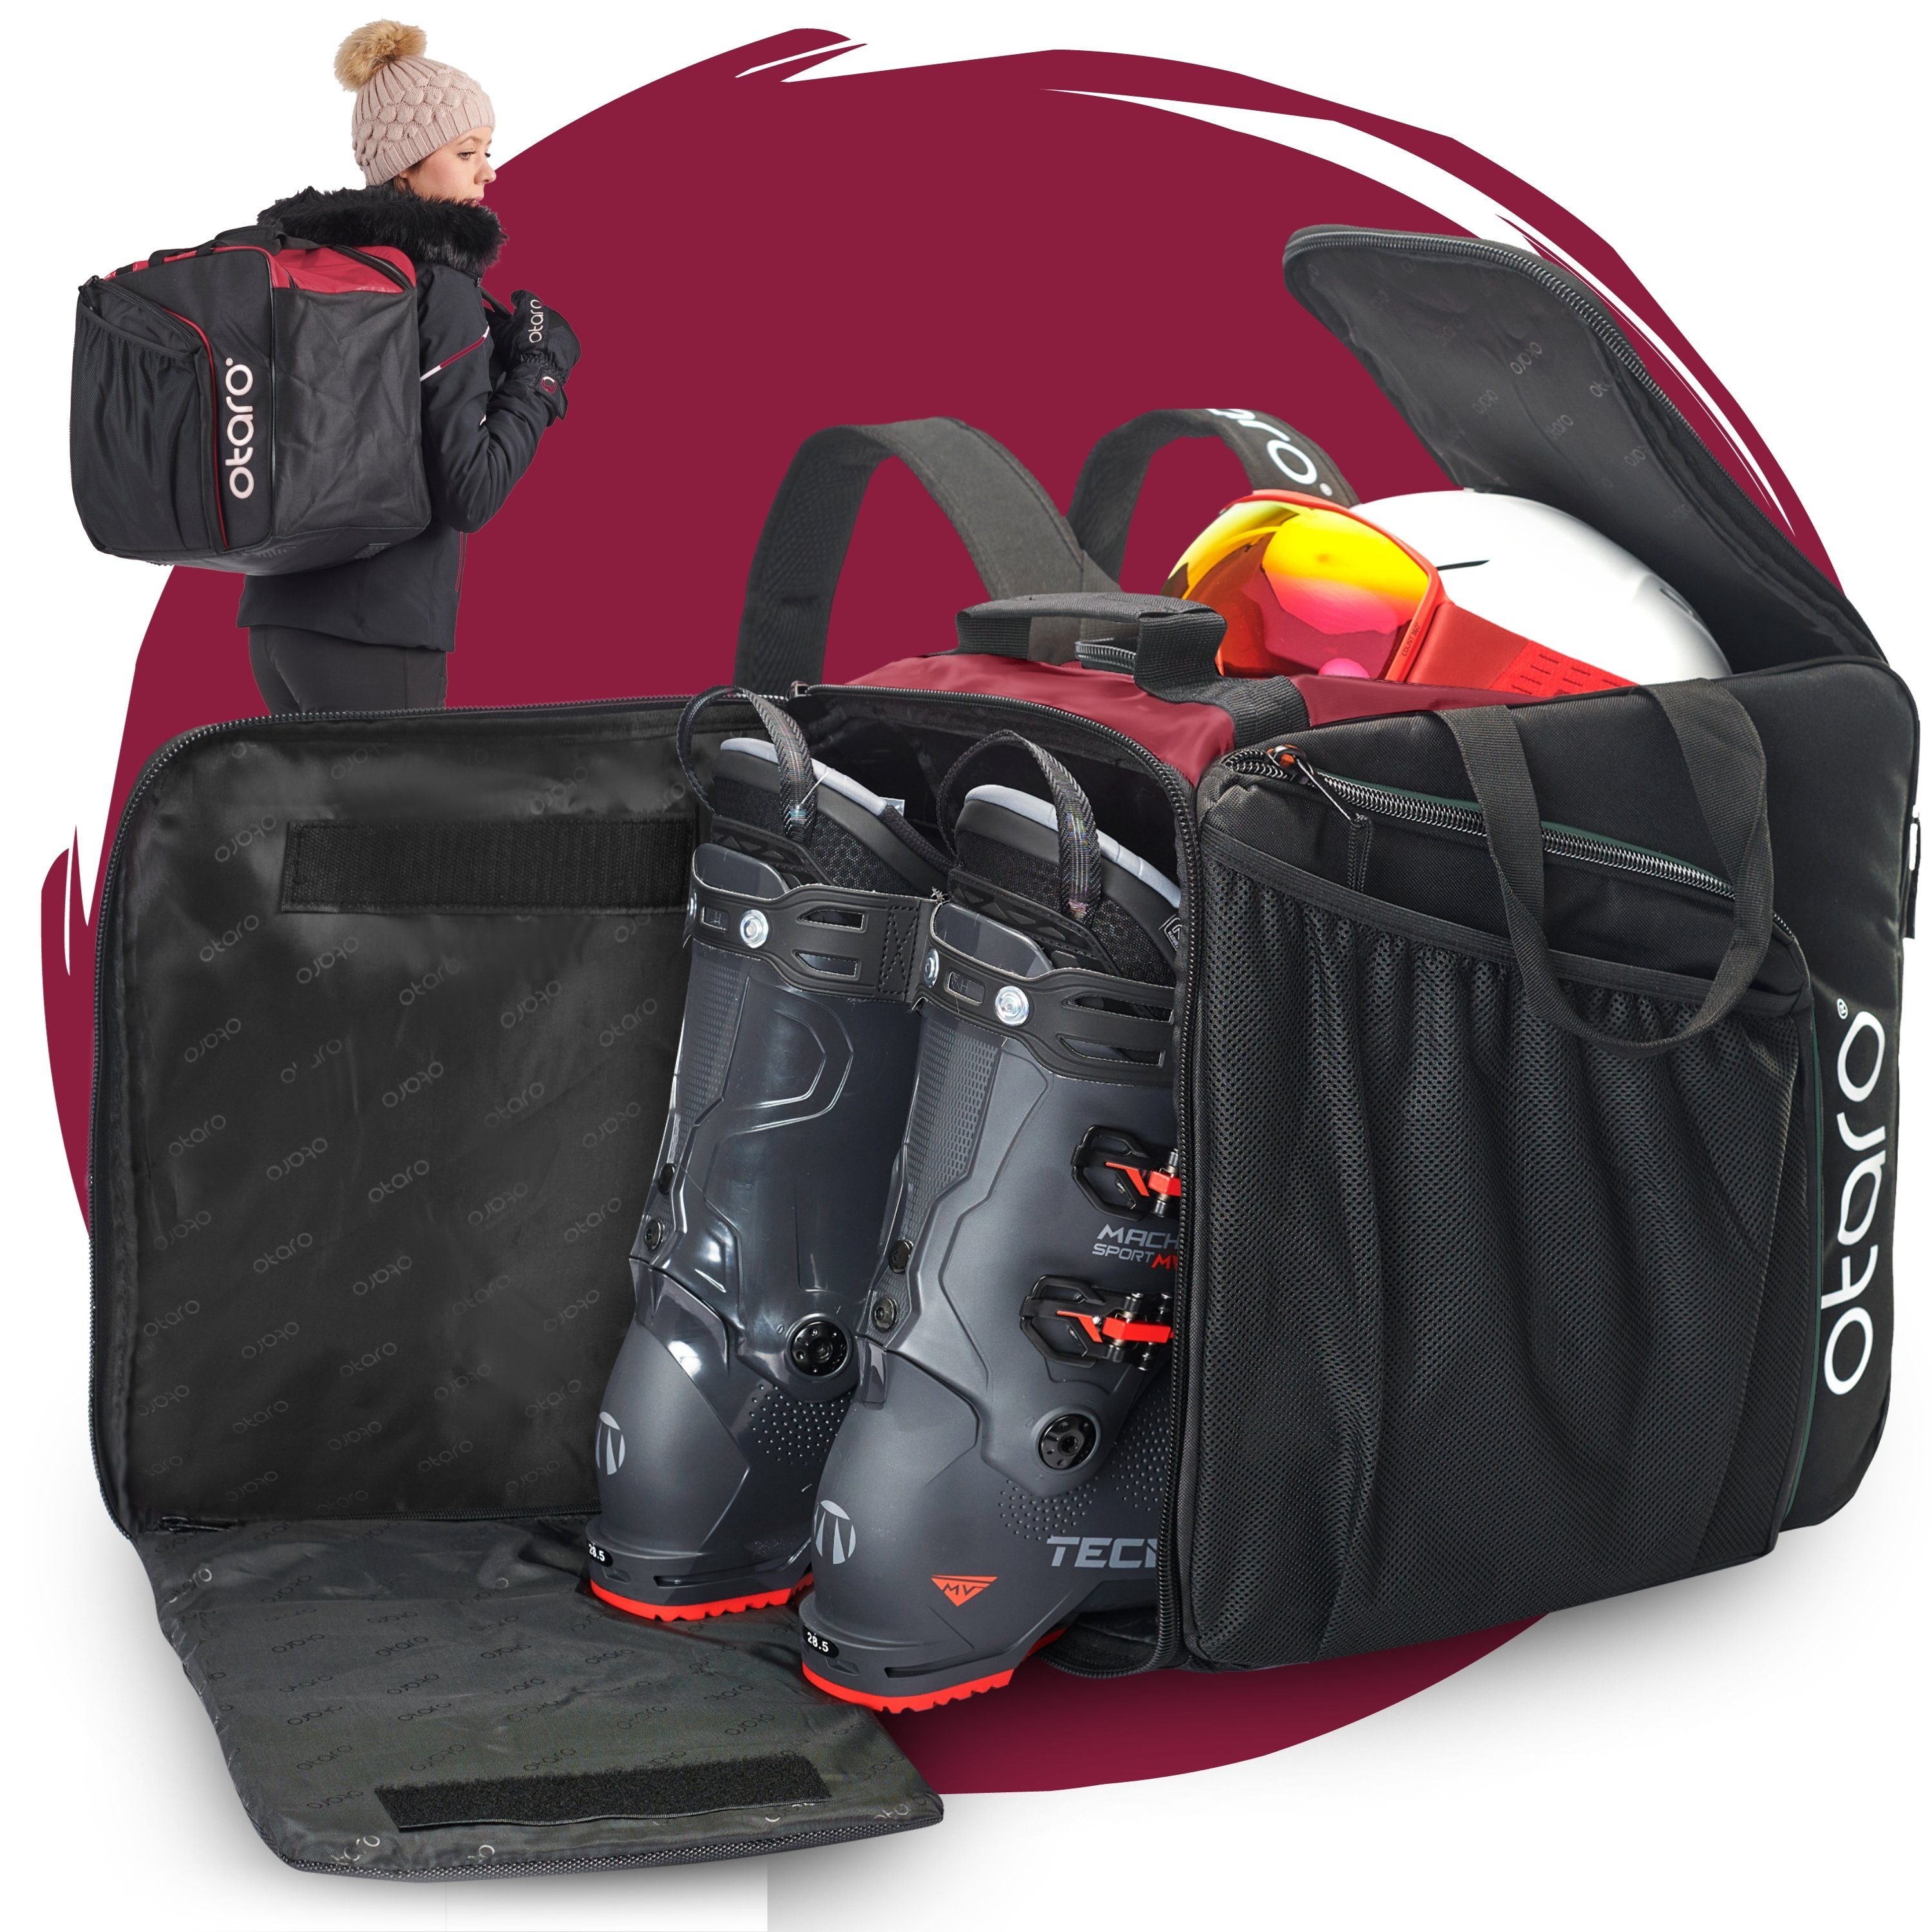 Otaro Sporttasche Skischuhtasche mit Helmfach für Pro Perfekt Schwarz Rucksackträger, Bordeauxrot Boarder) durchdacht, für ausklappbare 57L & bequemen Standfläche, deine & Skifahrer Ausrüstung, (Schutz